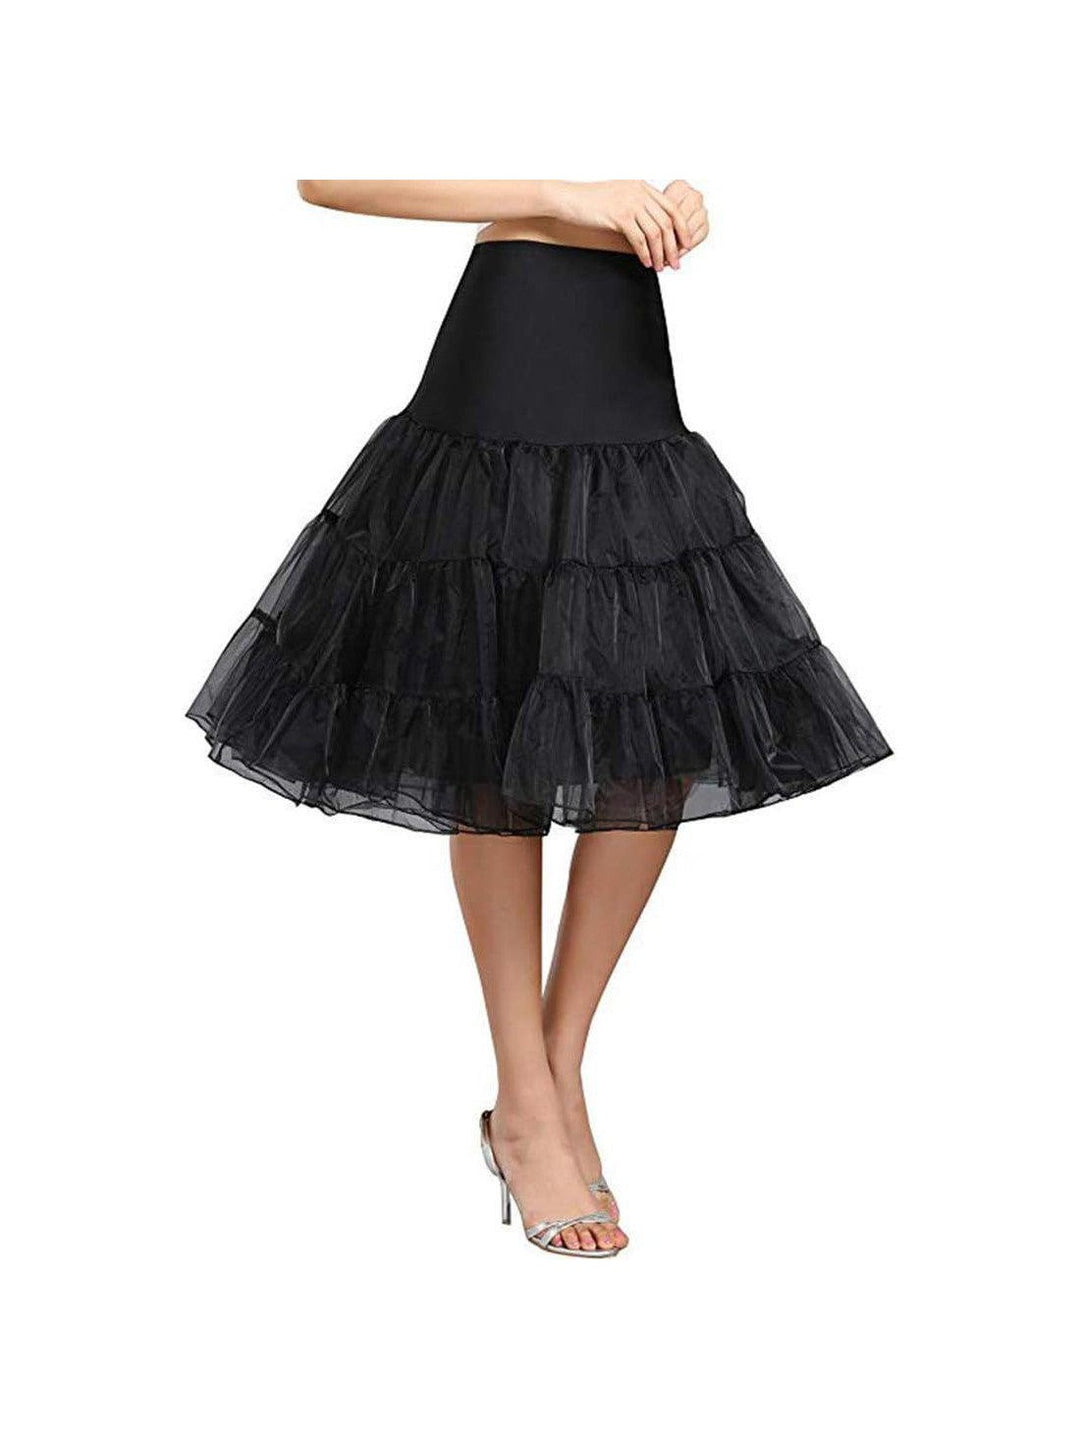 Rockabilly Petticoat, Varied Colors Petticoats, Plus Size Petticoat, Pin-up  Petticoat, Pinup Petticoat Rockabilly Clothing Retro Petticoat -  Canada